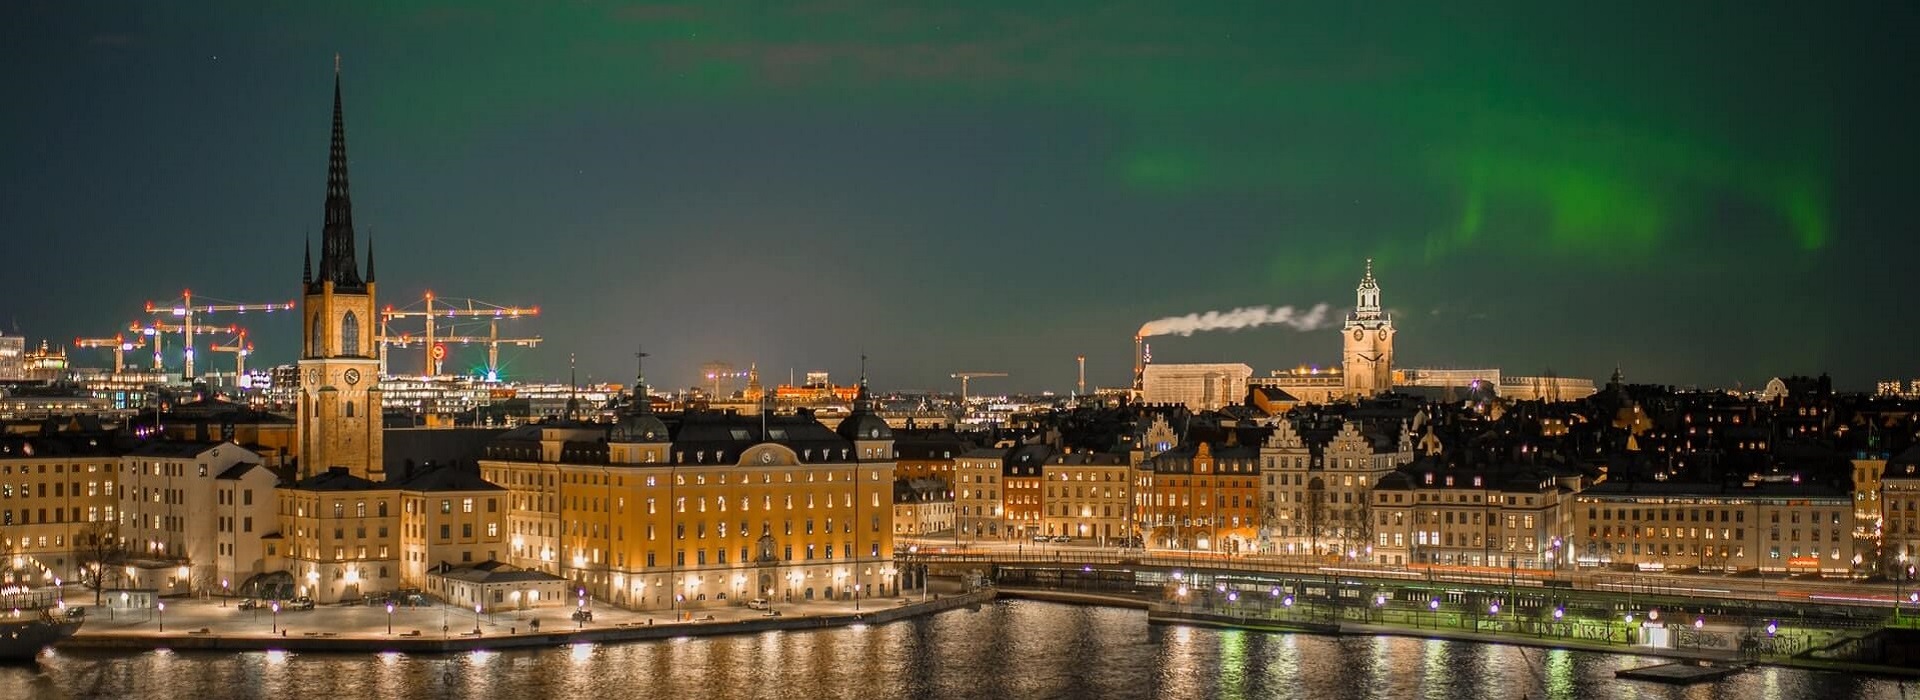 Cryogas | Stadfirma i Stockholm